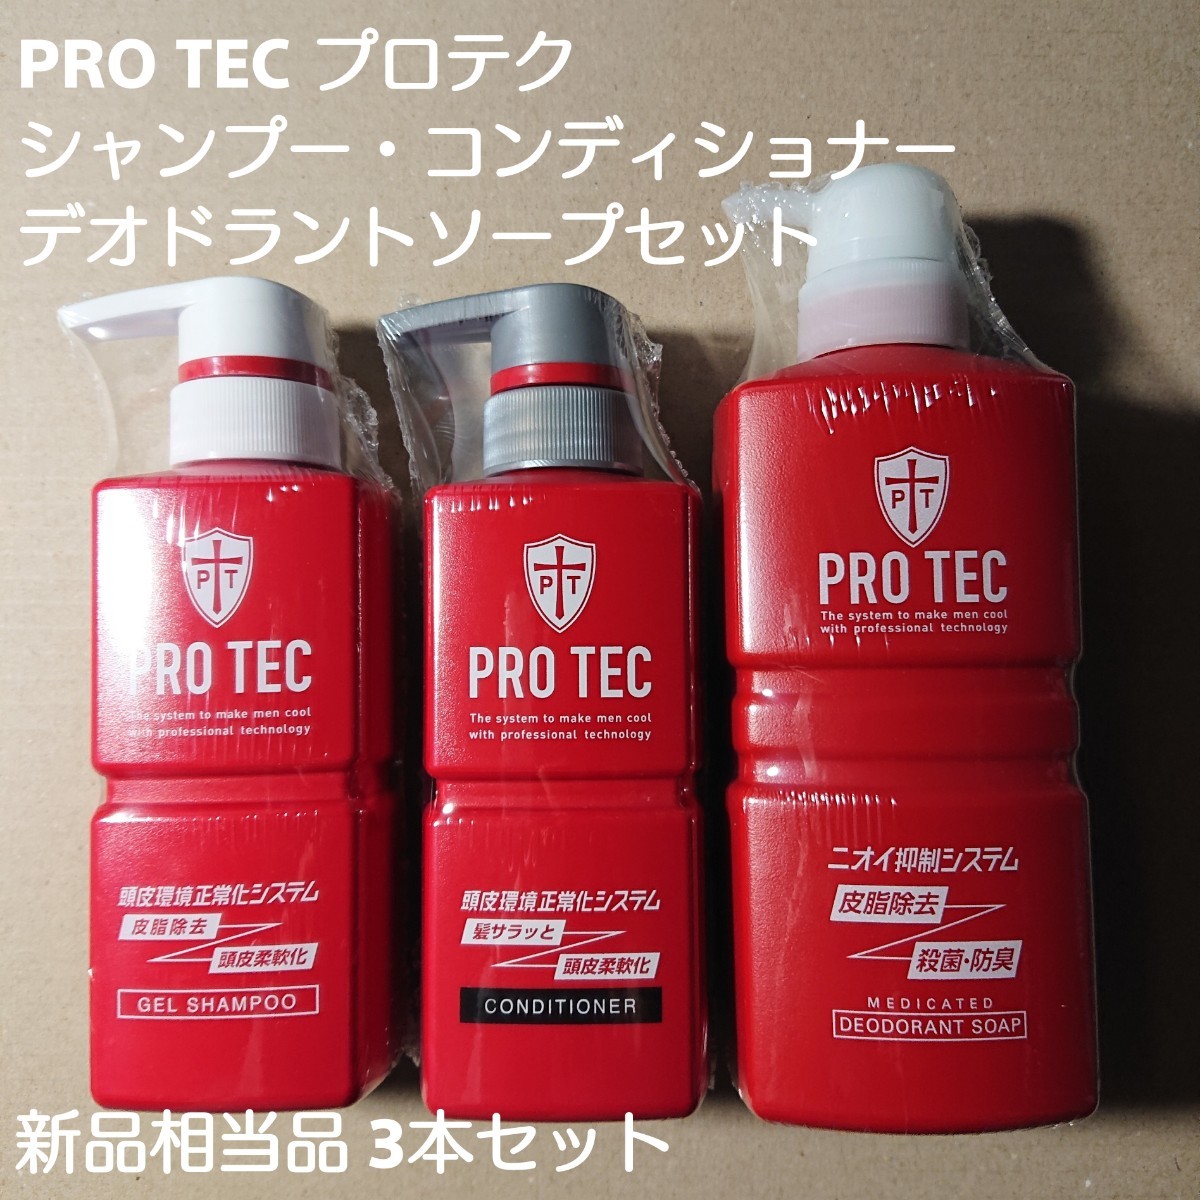 プロテク PRO TEC シャンプー・コンディショナー・デオドラントソープセット 新品相当品3本セット